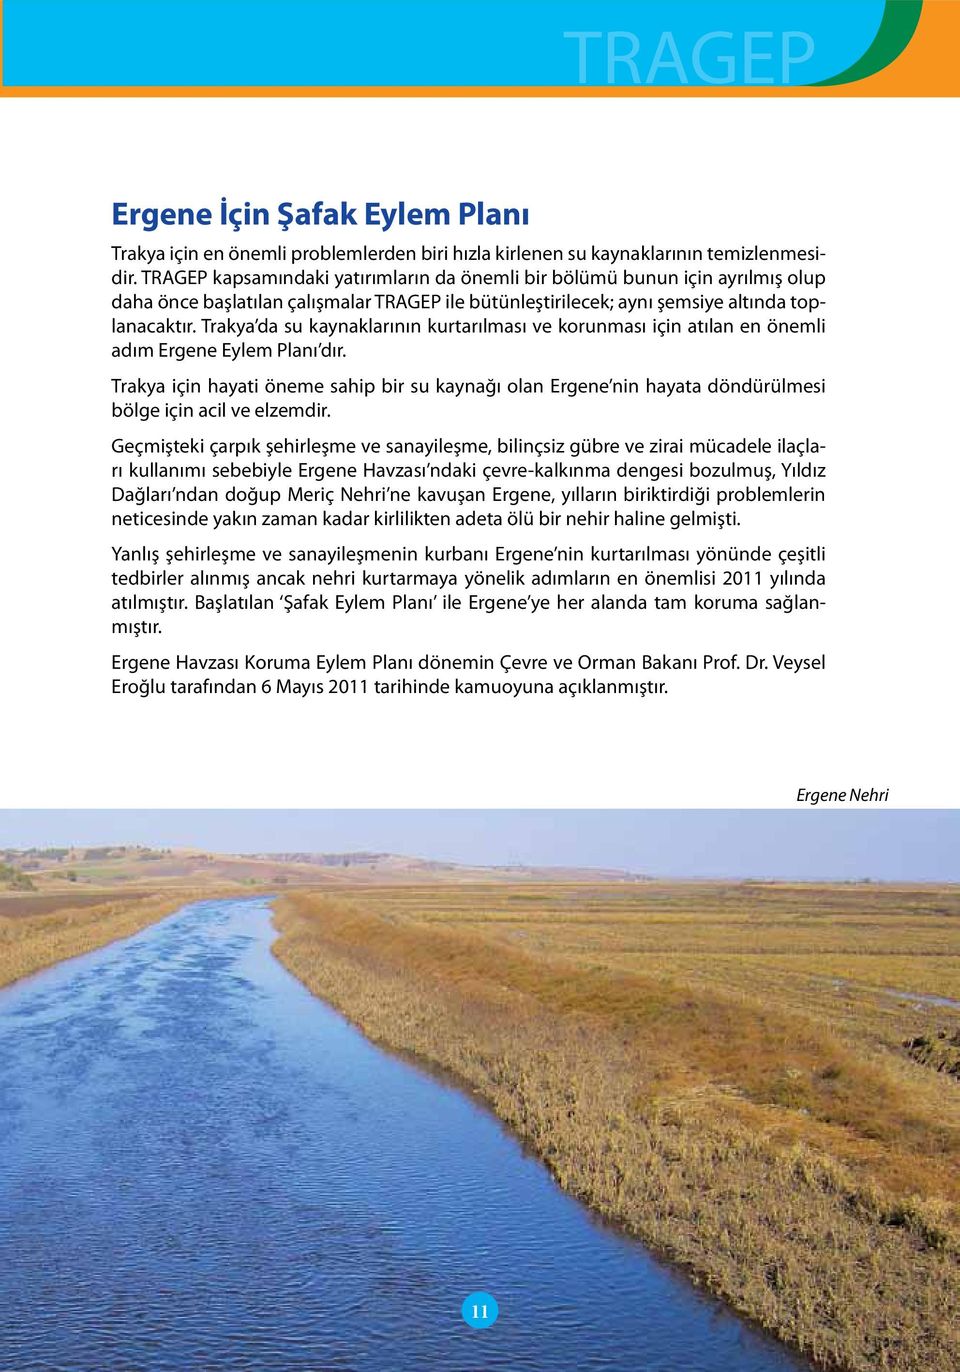 Trakya da su kaynaklarının kurtarılması ve korunması için atılan en önemli adım Ergene Eylem Planı dır.